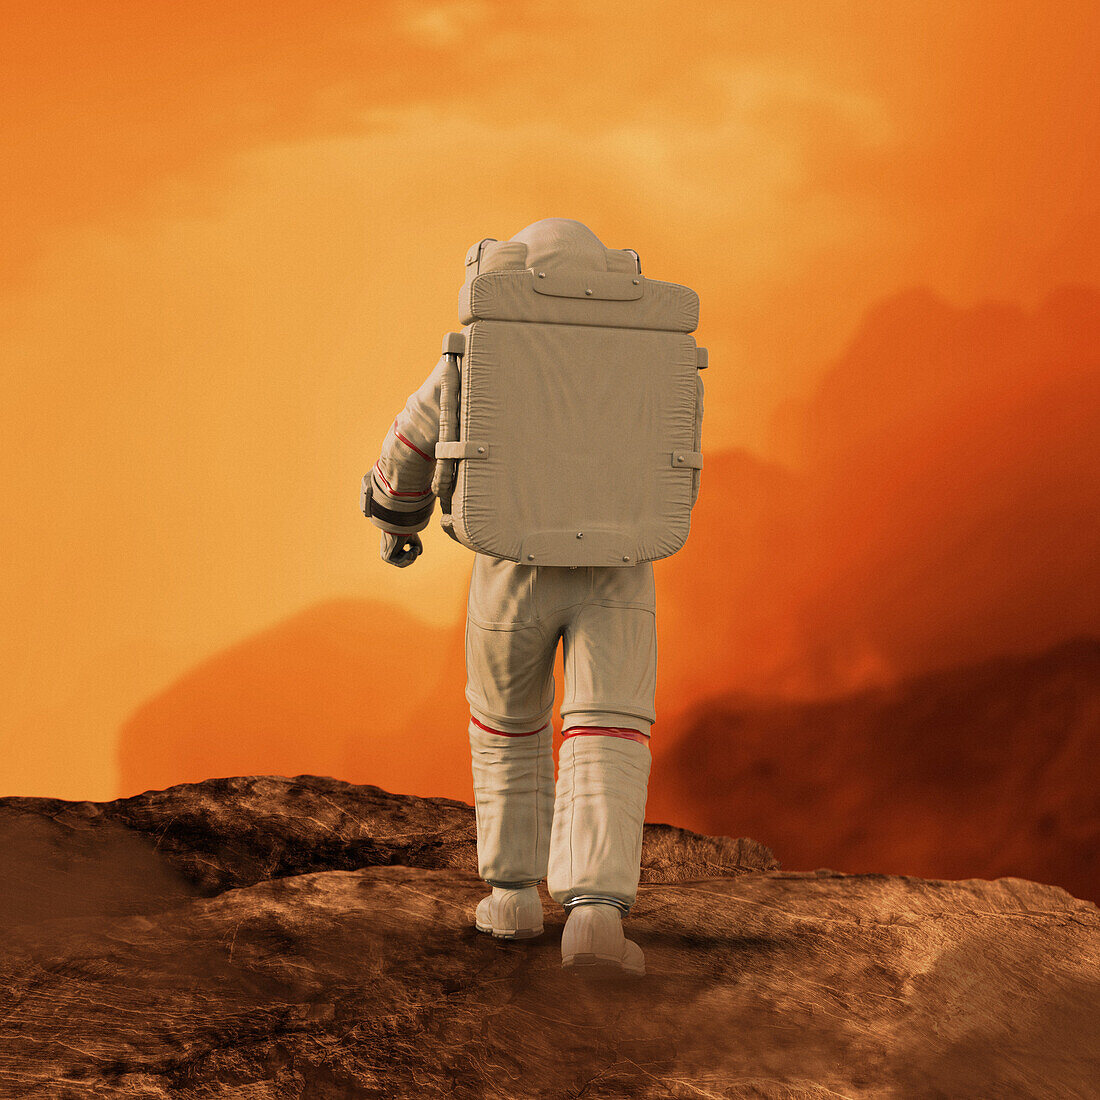 Astronaut walking on the surface of Mars, illustration